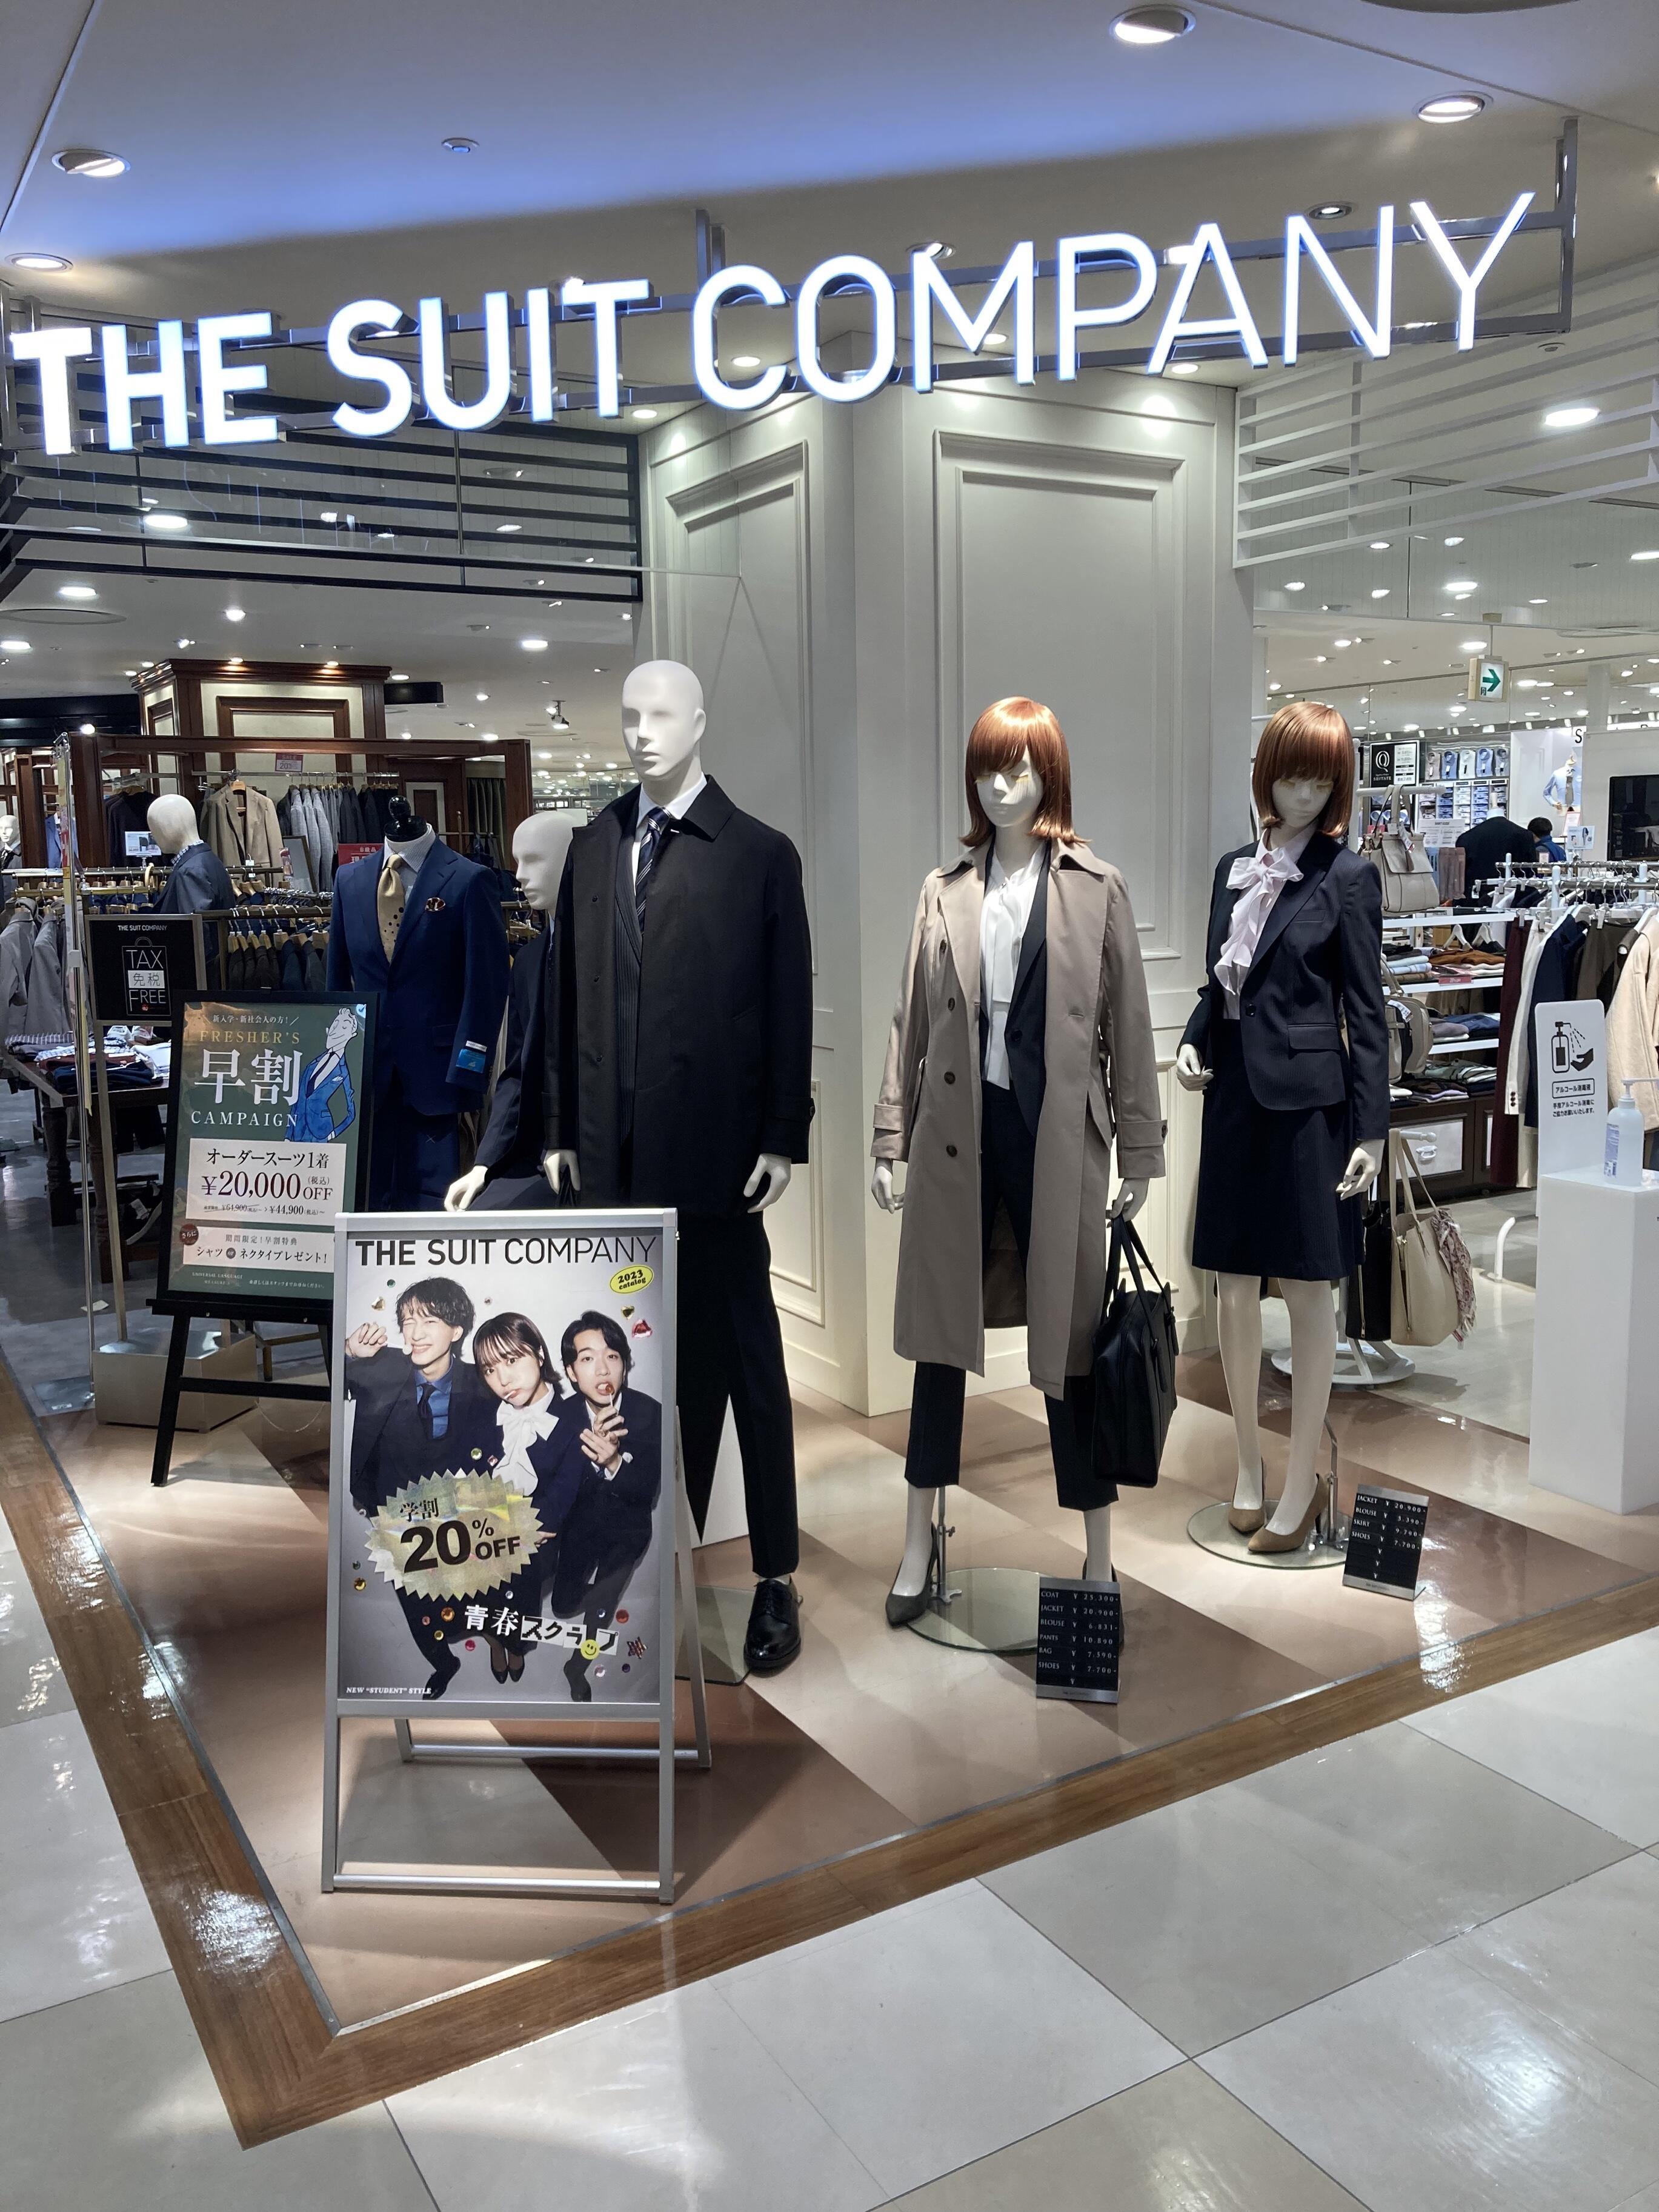 THE SUIT COMPANY アルカキット錦糸町店 - 墨田区錦糸/衣料品店 